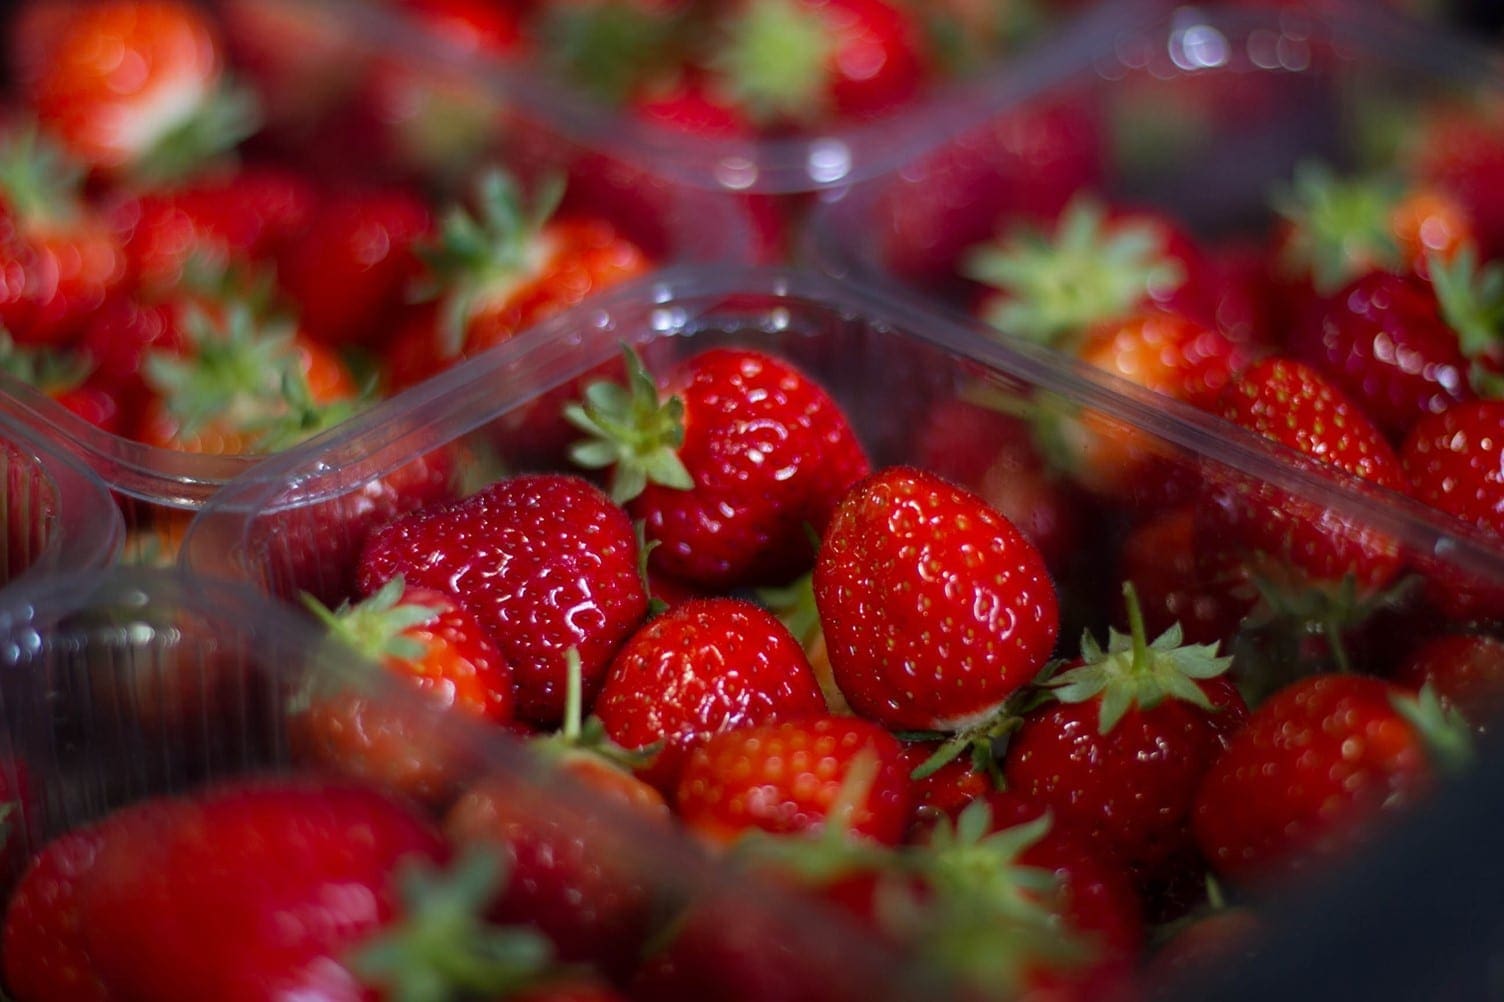 AVA Berries Free Strawberries